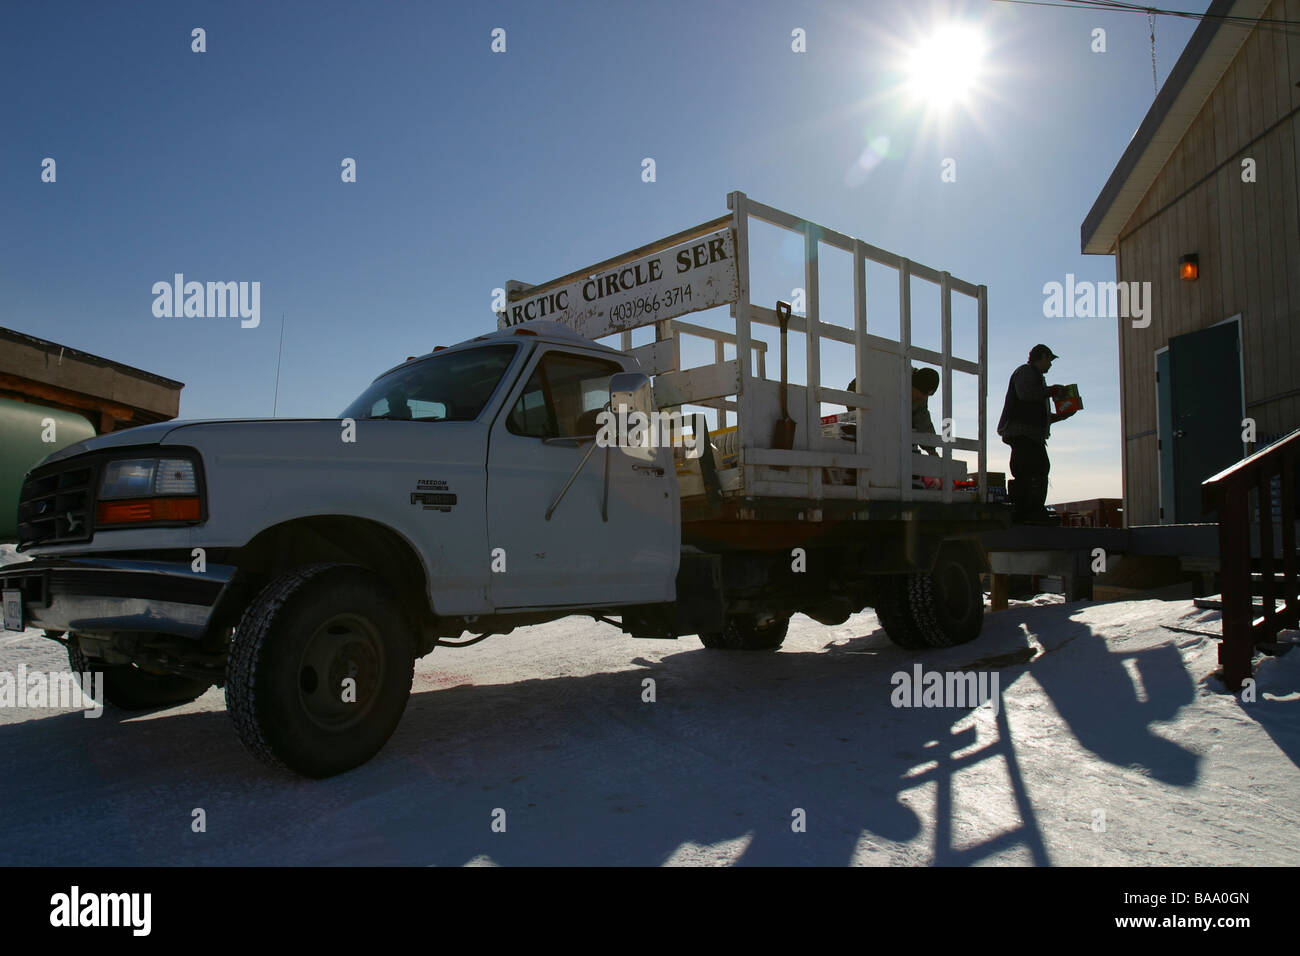 Ein LKW liefert waren an der Gemeinschaft-Store in der abgelegenen einfliegen First Nation Ortschaft Old Crow, Yukon Territorium, Kanada. Stockfoto